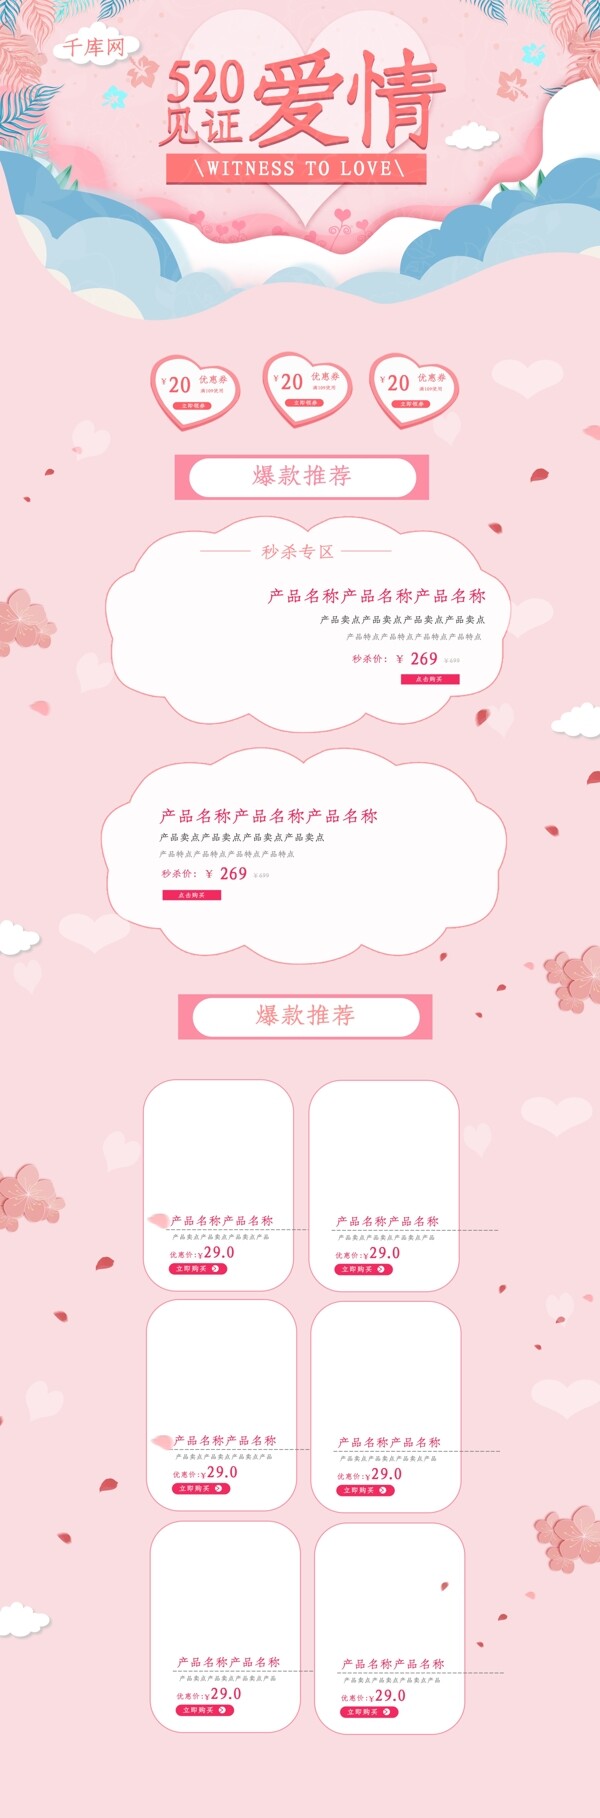 520见证爱情插画粉色清新电商淘宝首页模板